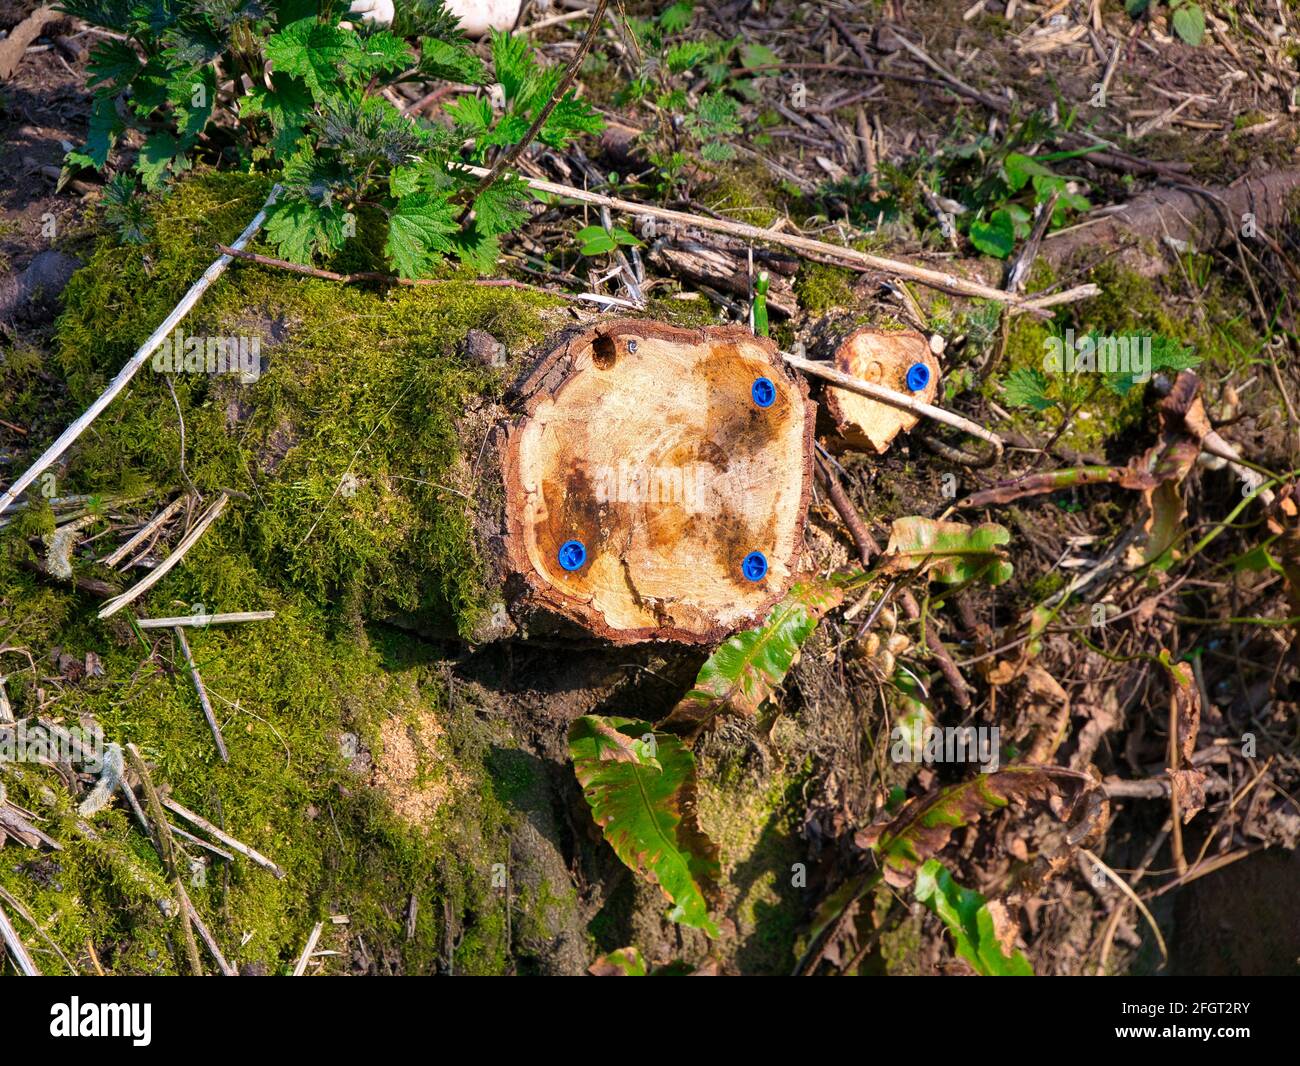 Un arbre abattu montrant des bouchons bleus de glyphosate insérés pour tuer le bois dans le cadre de la gestion des bois. Banque D'Images